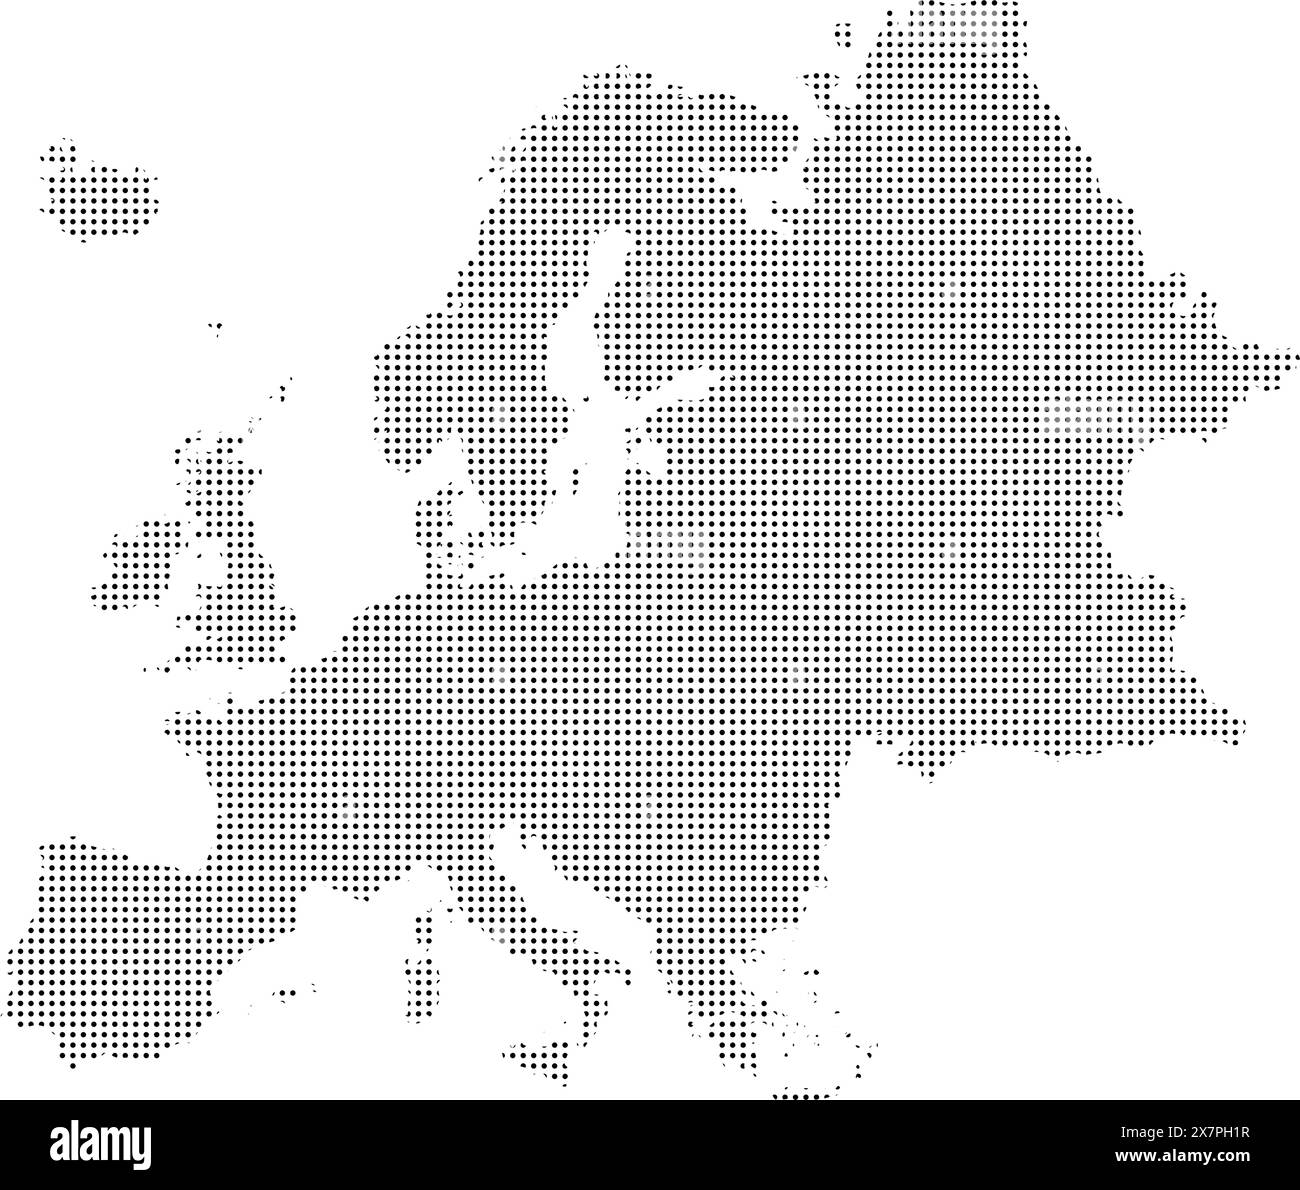 Immagine vettoriale tratteggiata della mappa europea Illustrazione Vettoriale